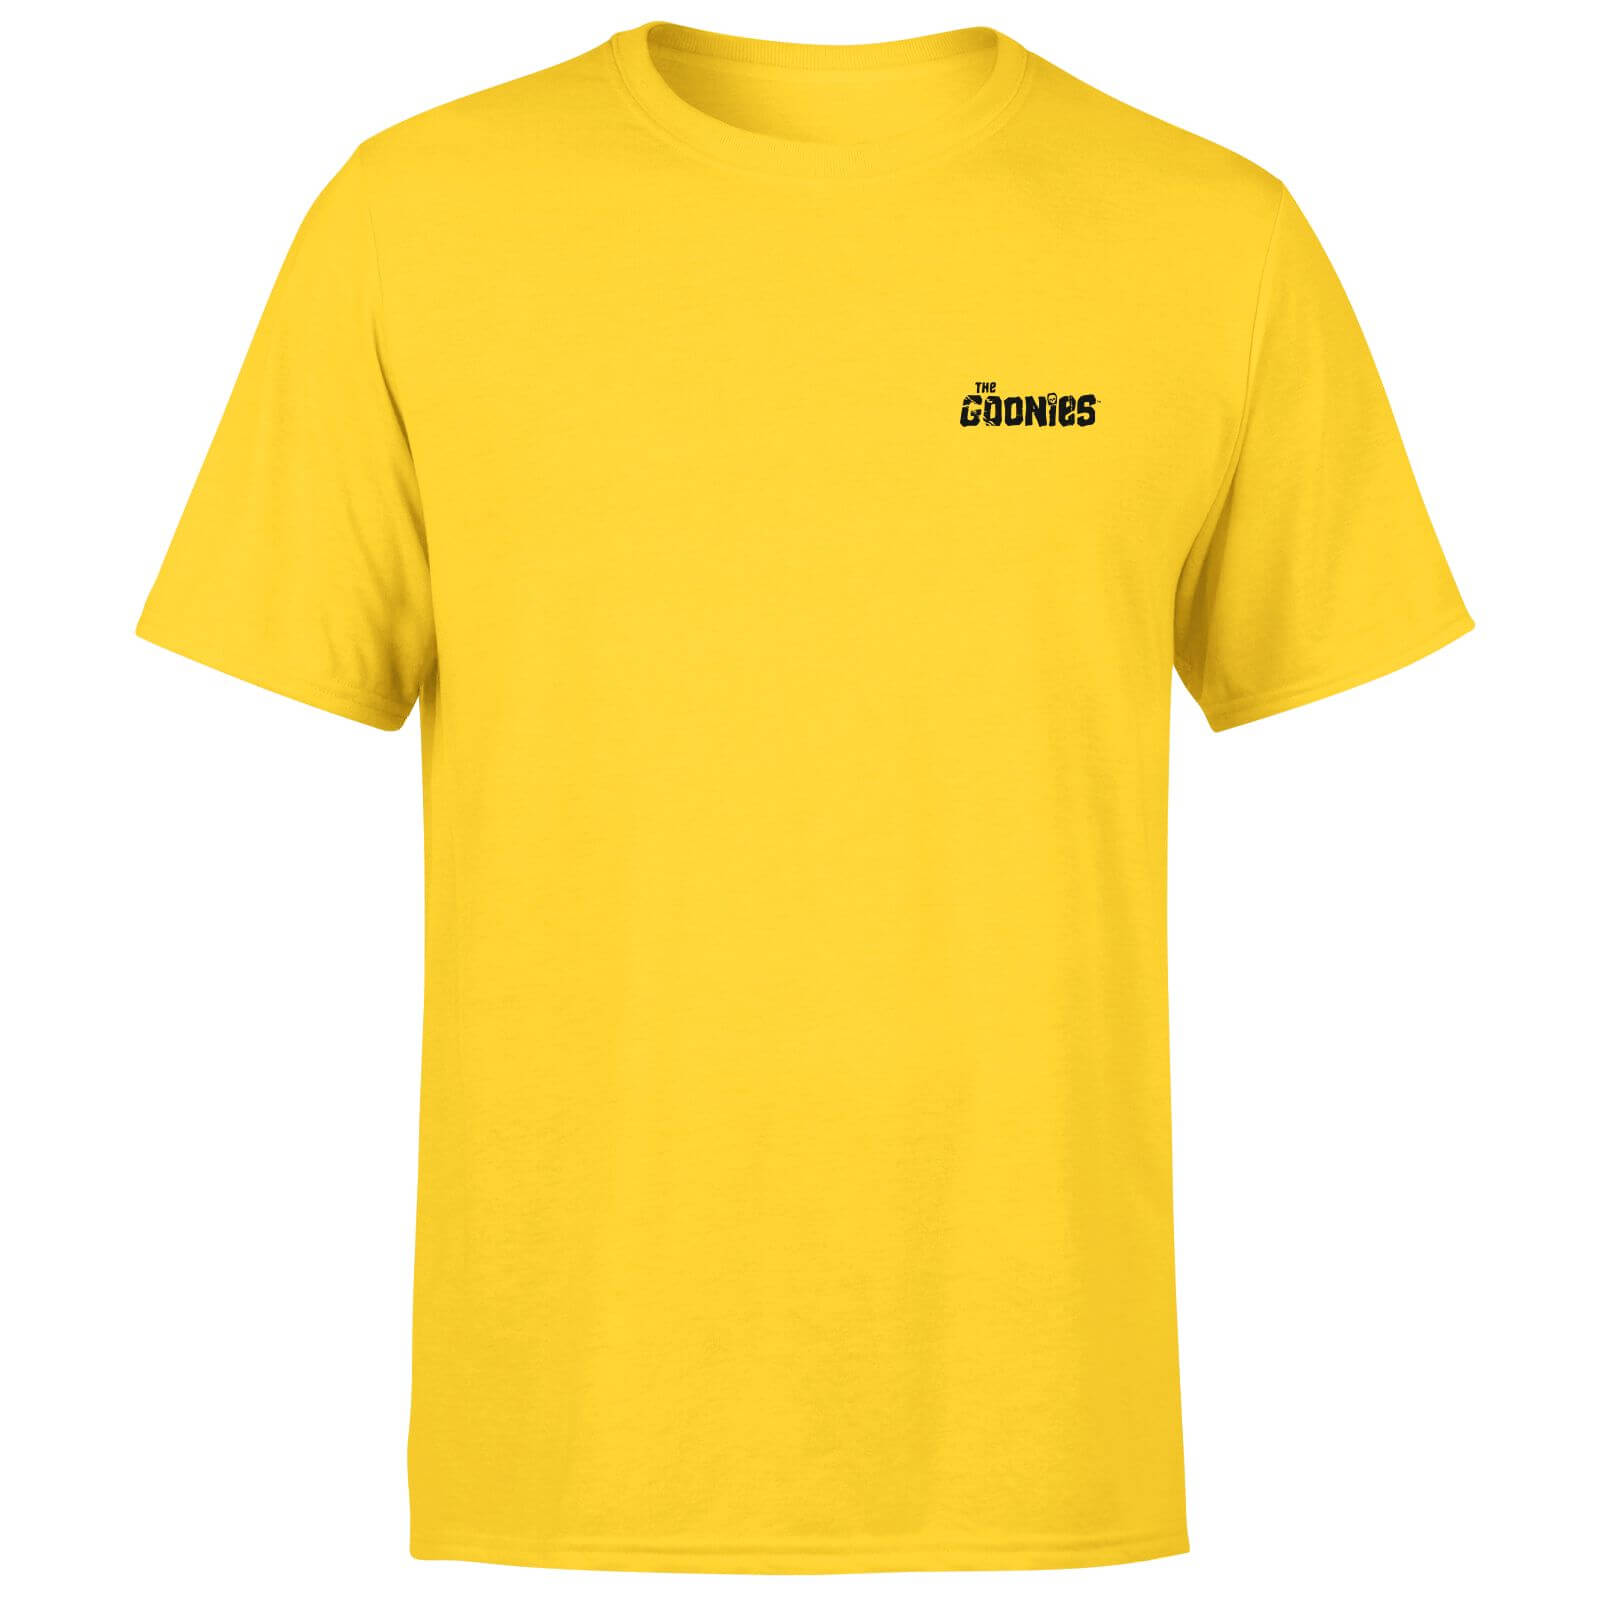 The Goonies Hey You Guys Unisex T-Shirt - Yellow - XXL - Yellow